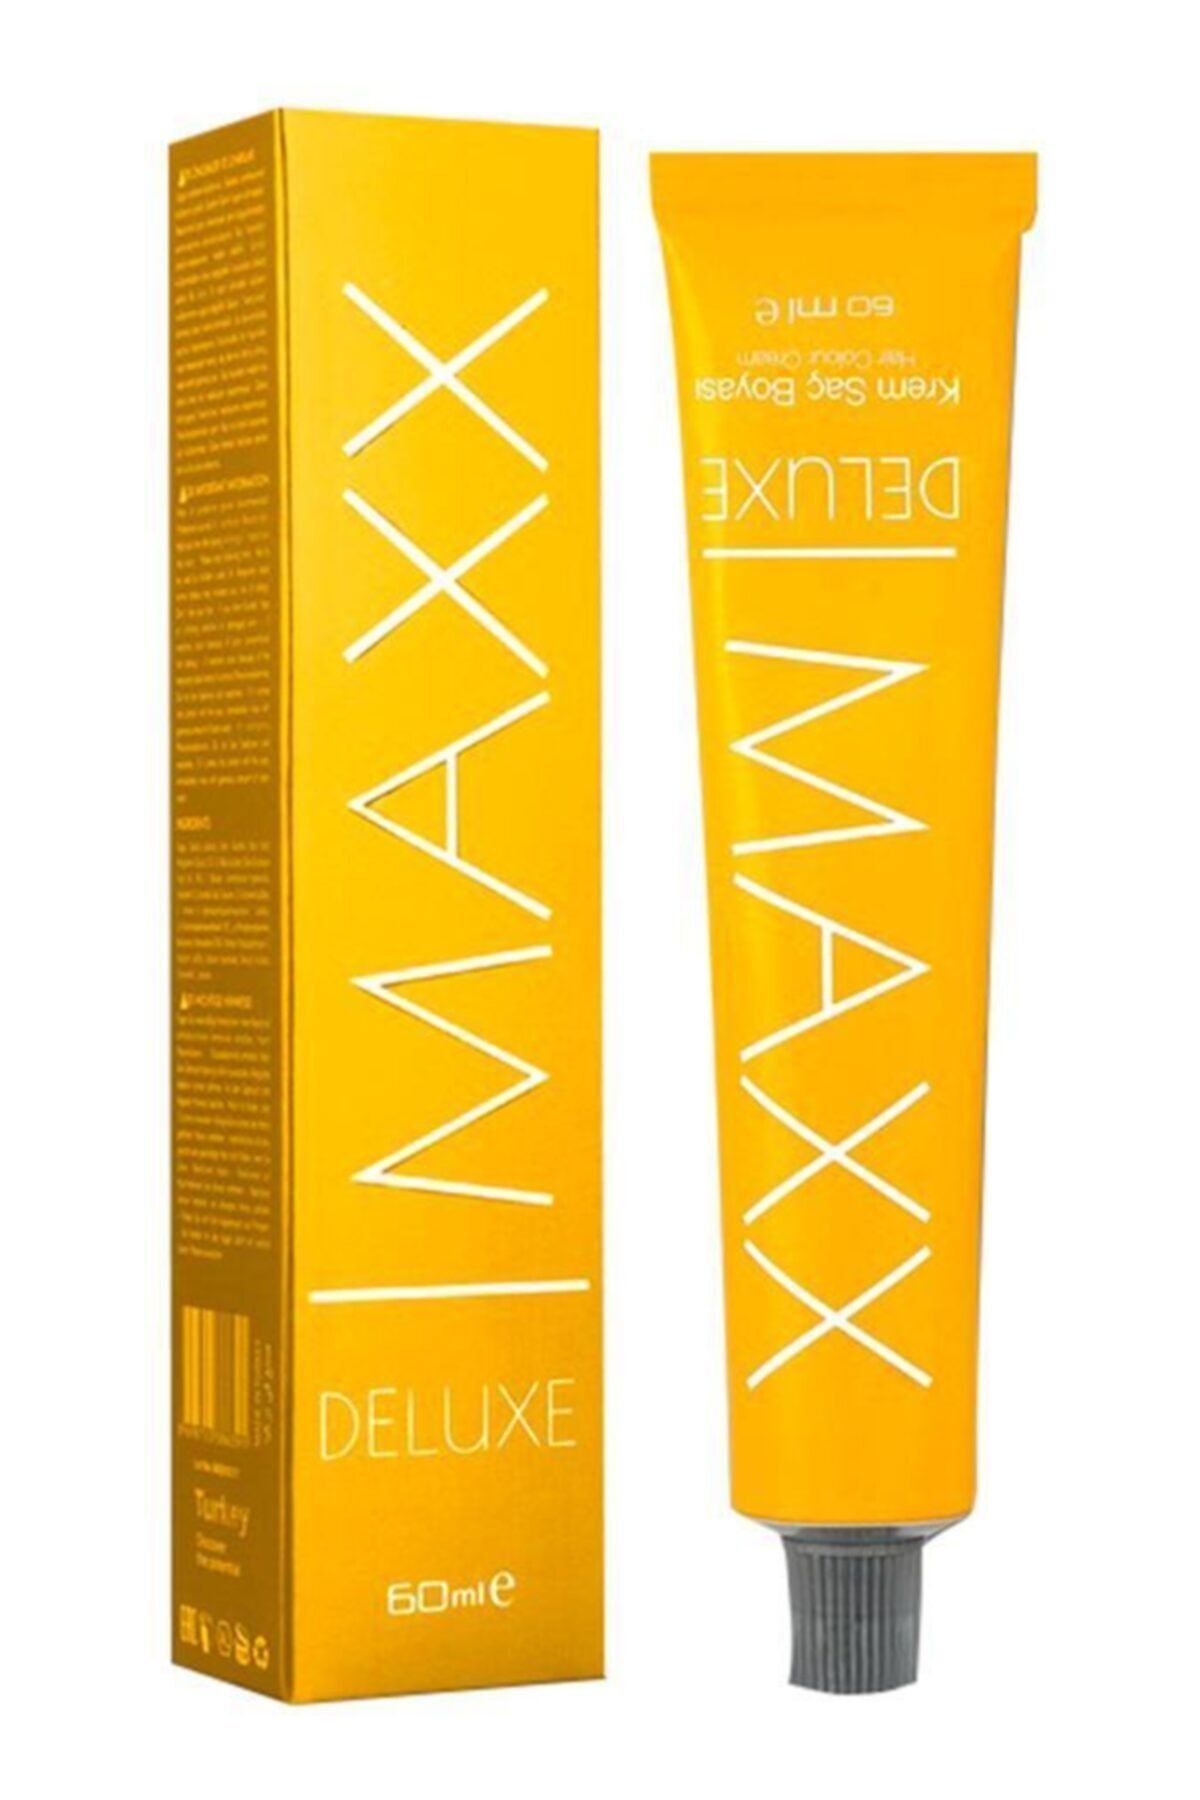 Maxx Deluxe Sac Boyasi 60 Ml 1 Adet Fiyati Yorumlari Trendyol